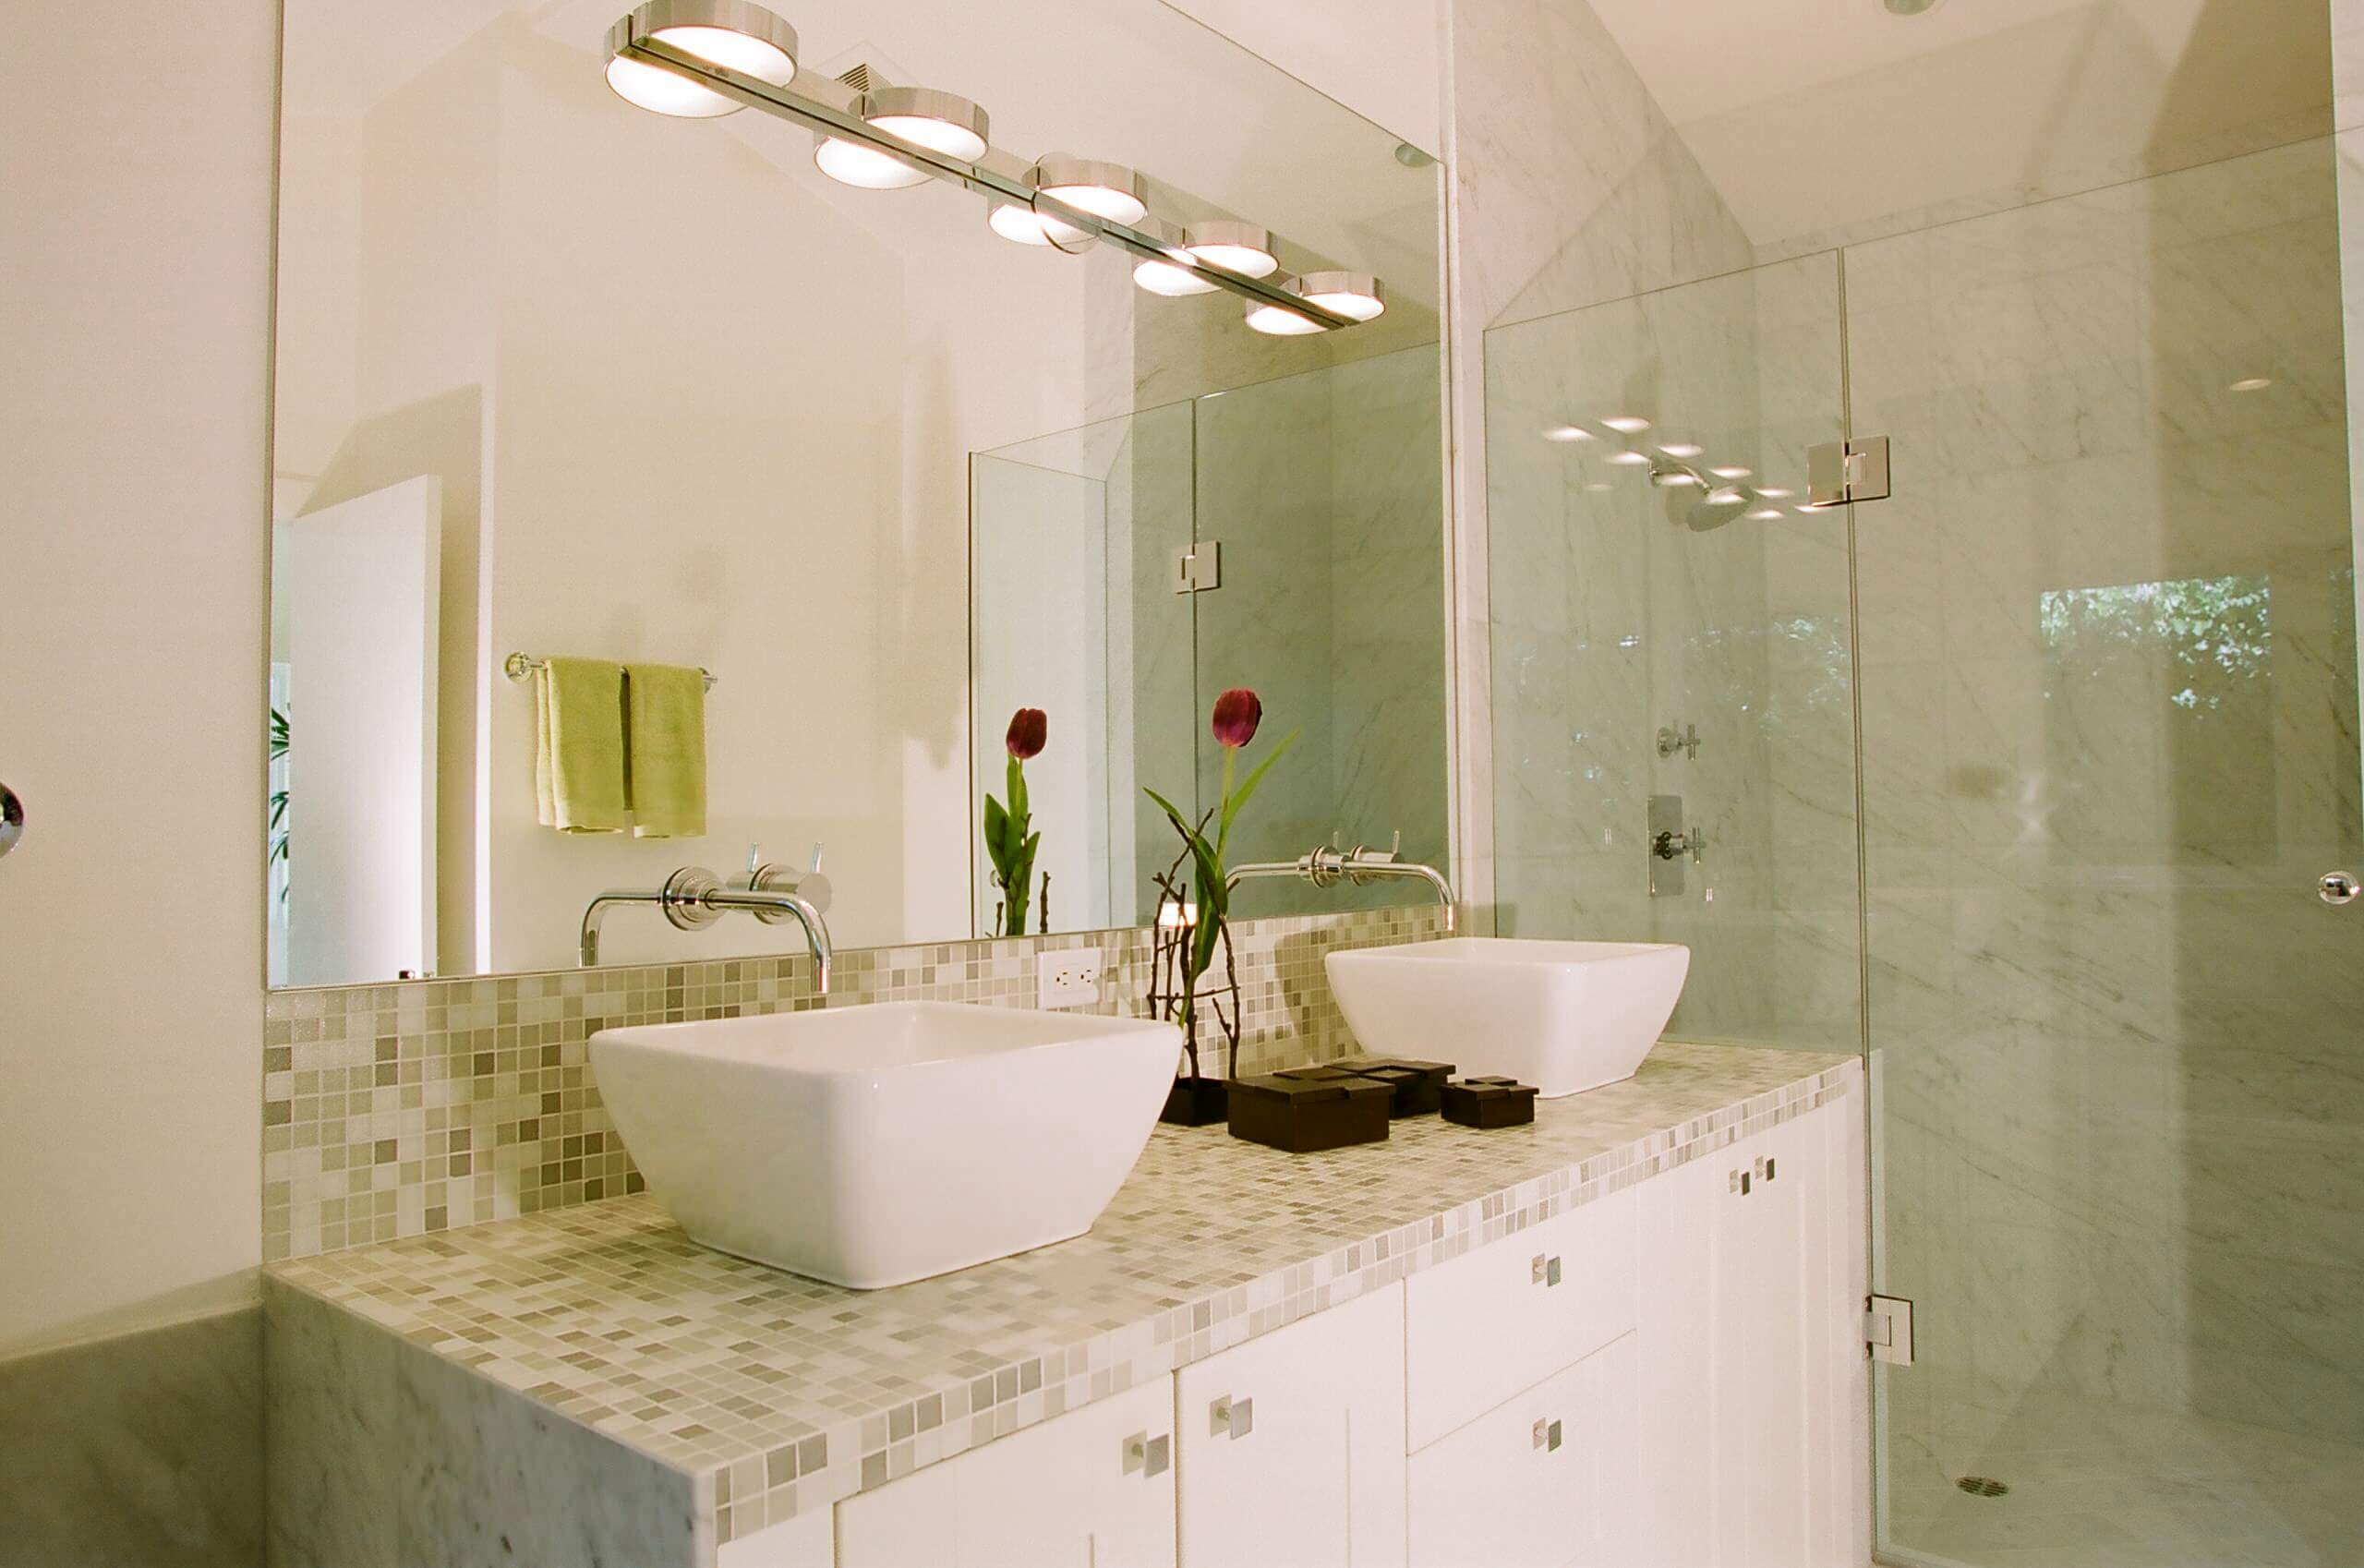 17 contemporary bathroom faucet designs